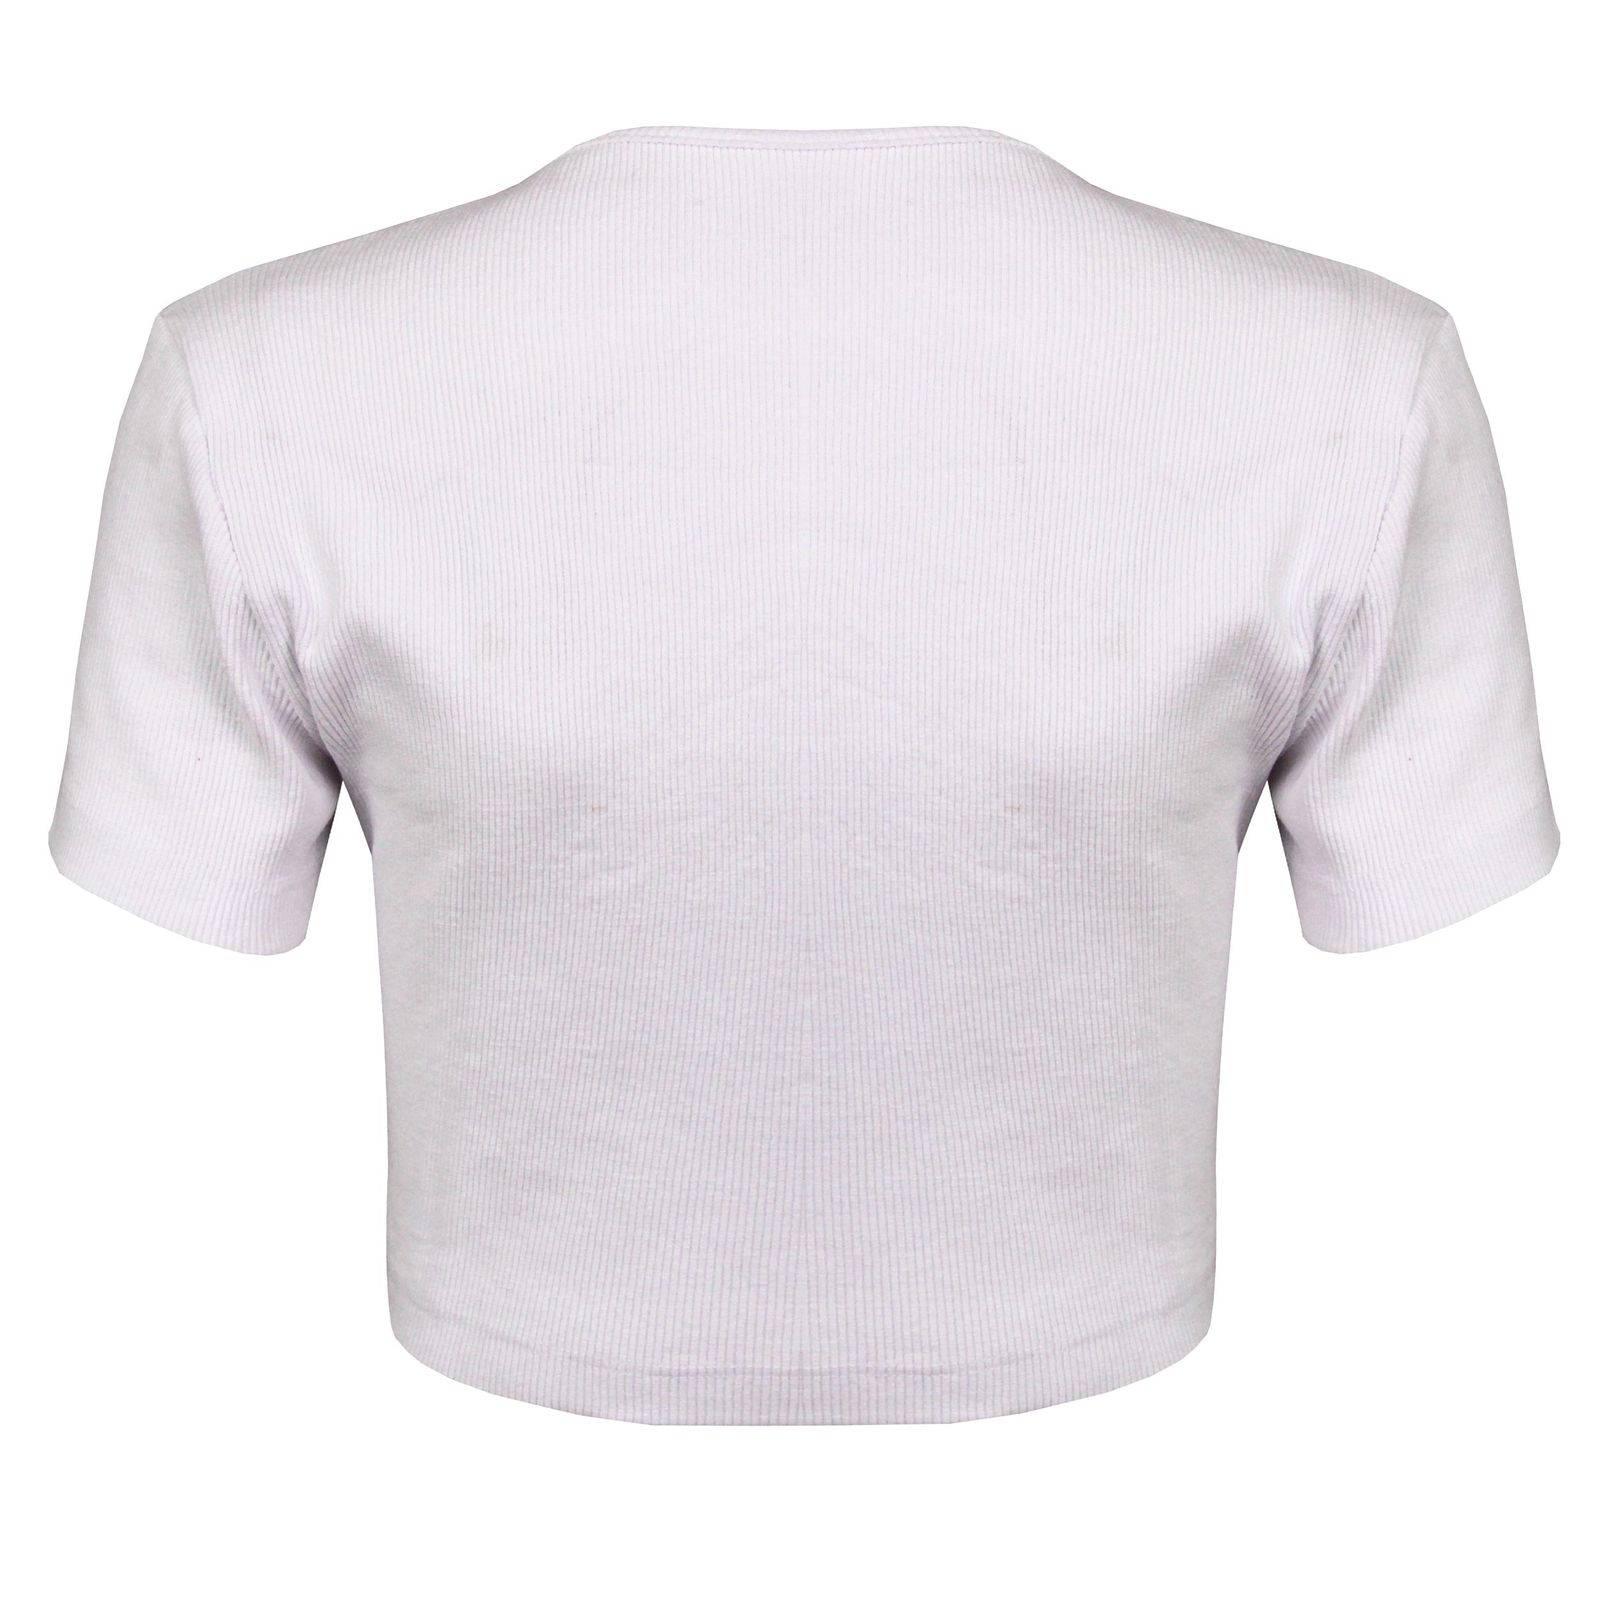 تی شرت آستین کوتاه زنانه ماییلدا مدل 4443-5430 رنگ سفید -  - 3